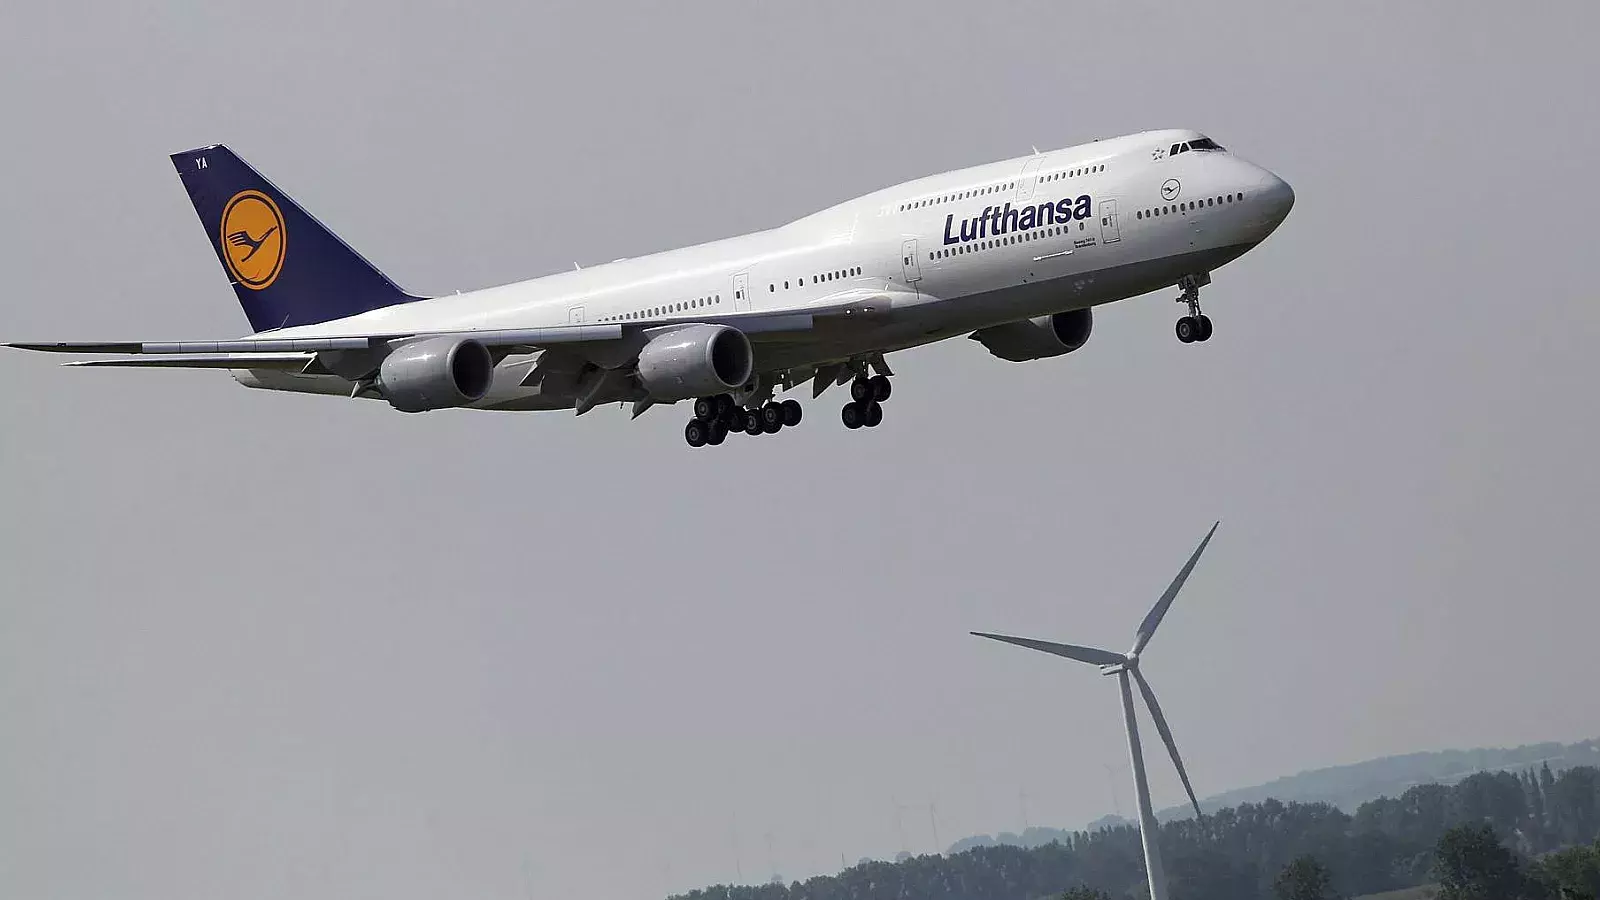 El avión entró en “caída libre”: Siete heridos y un momento de terror en vuelo de Lufthansa